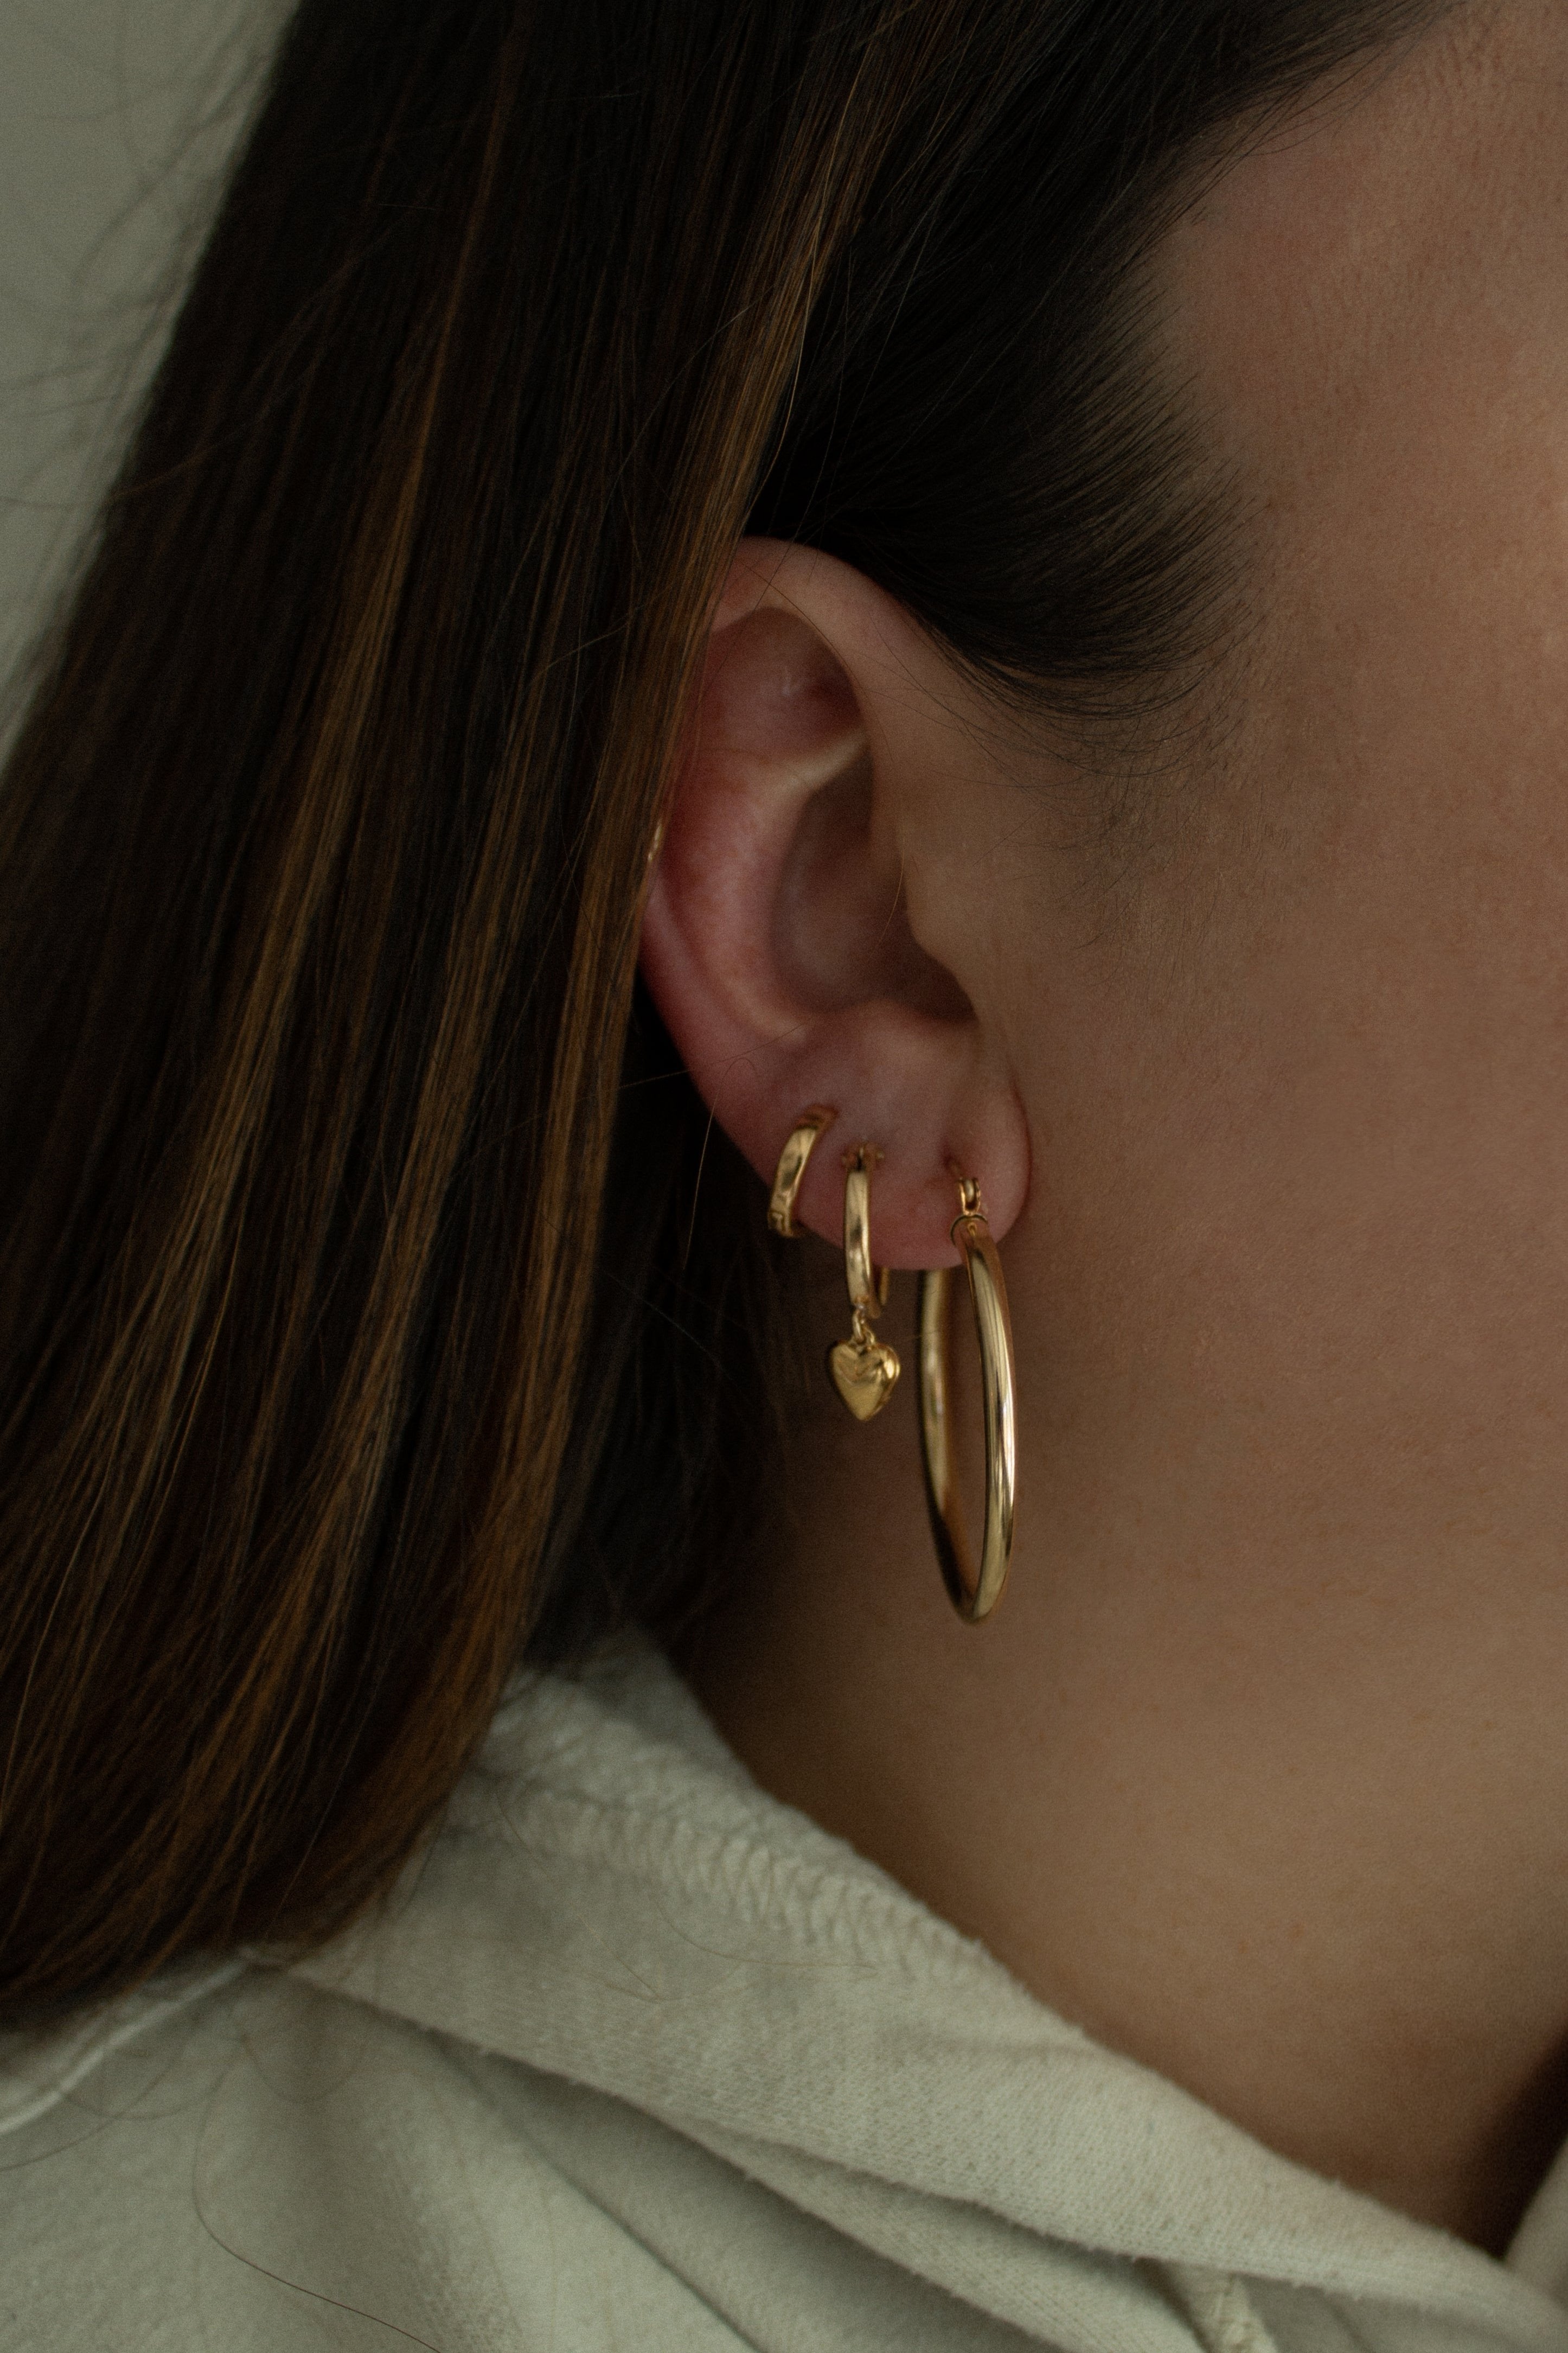 Lindsay earrings